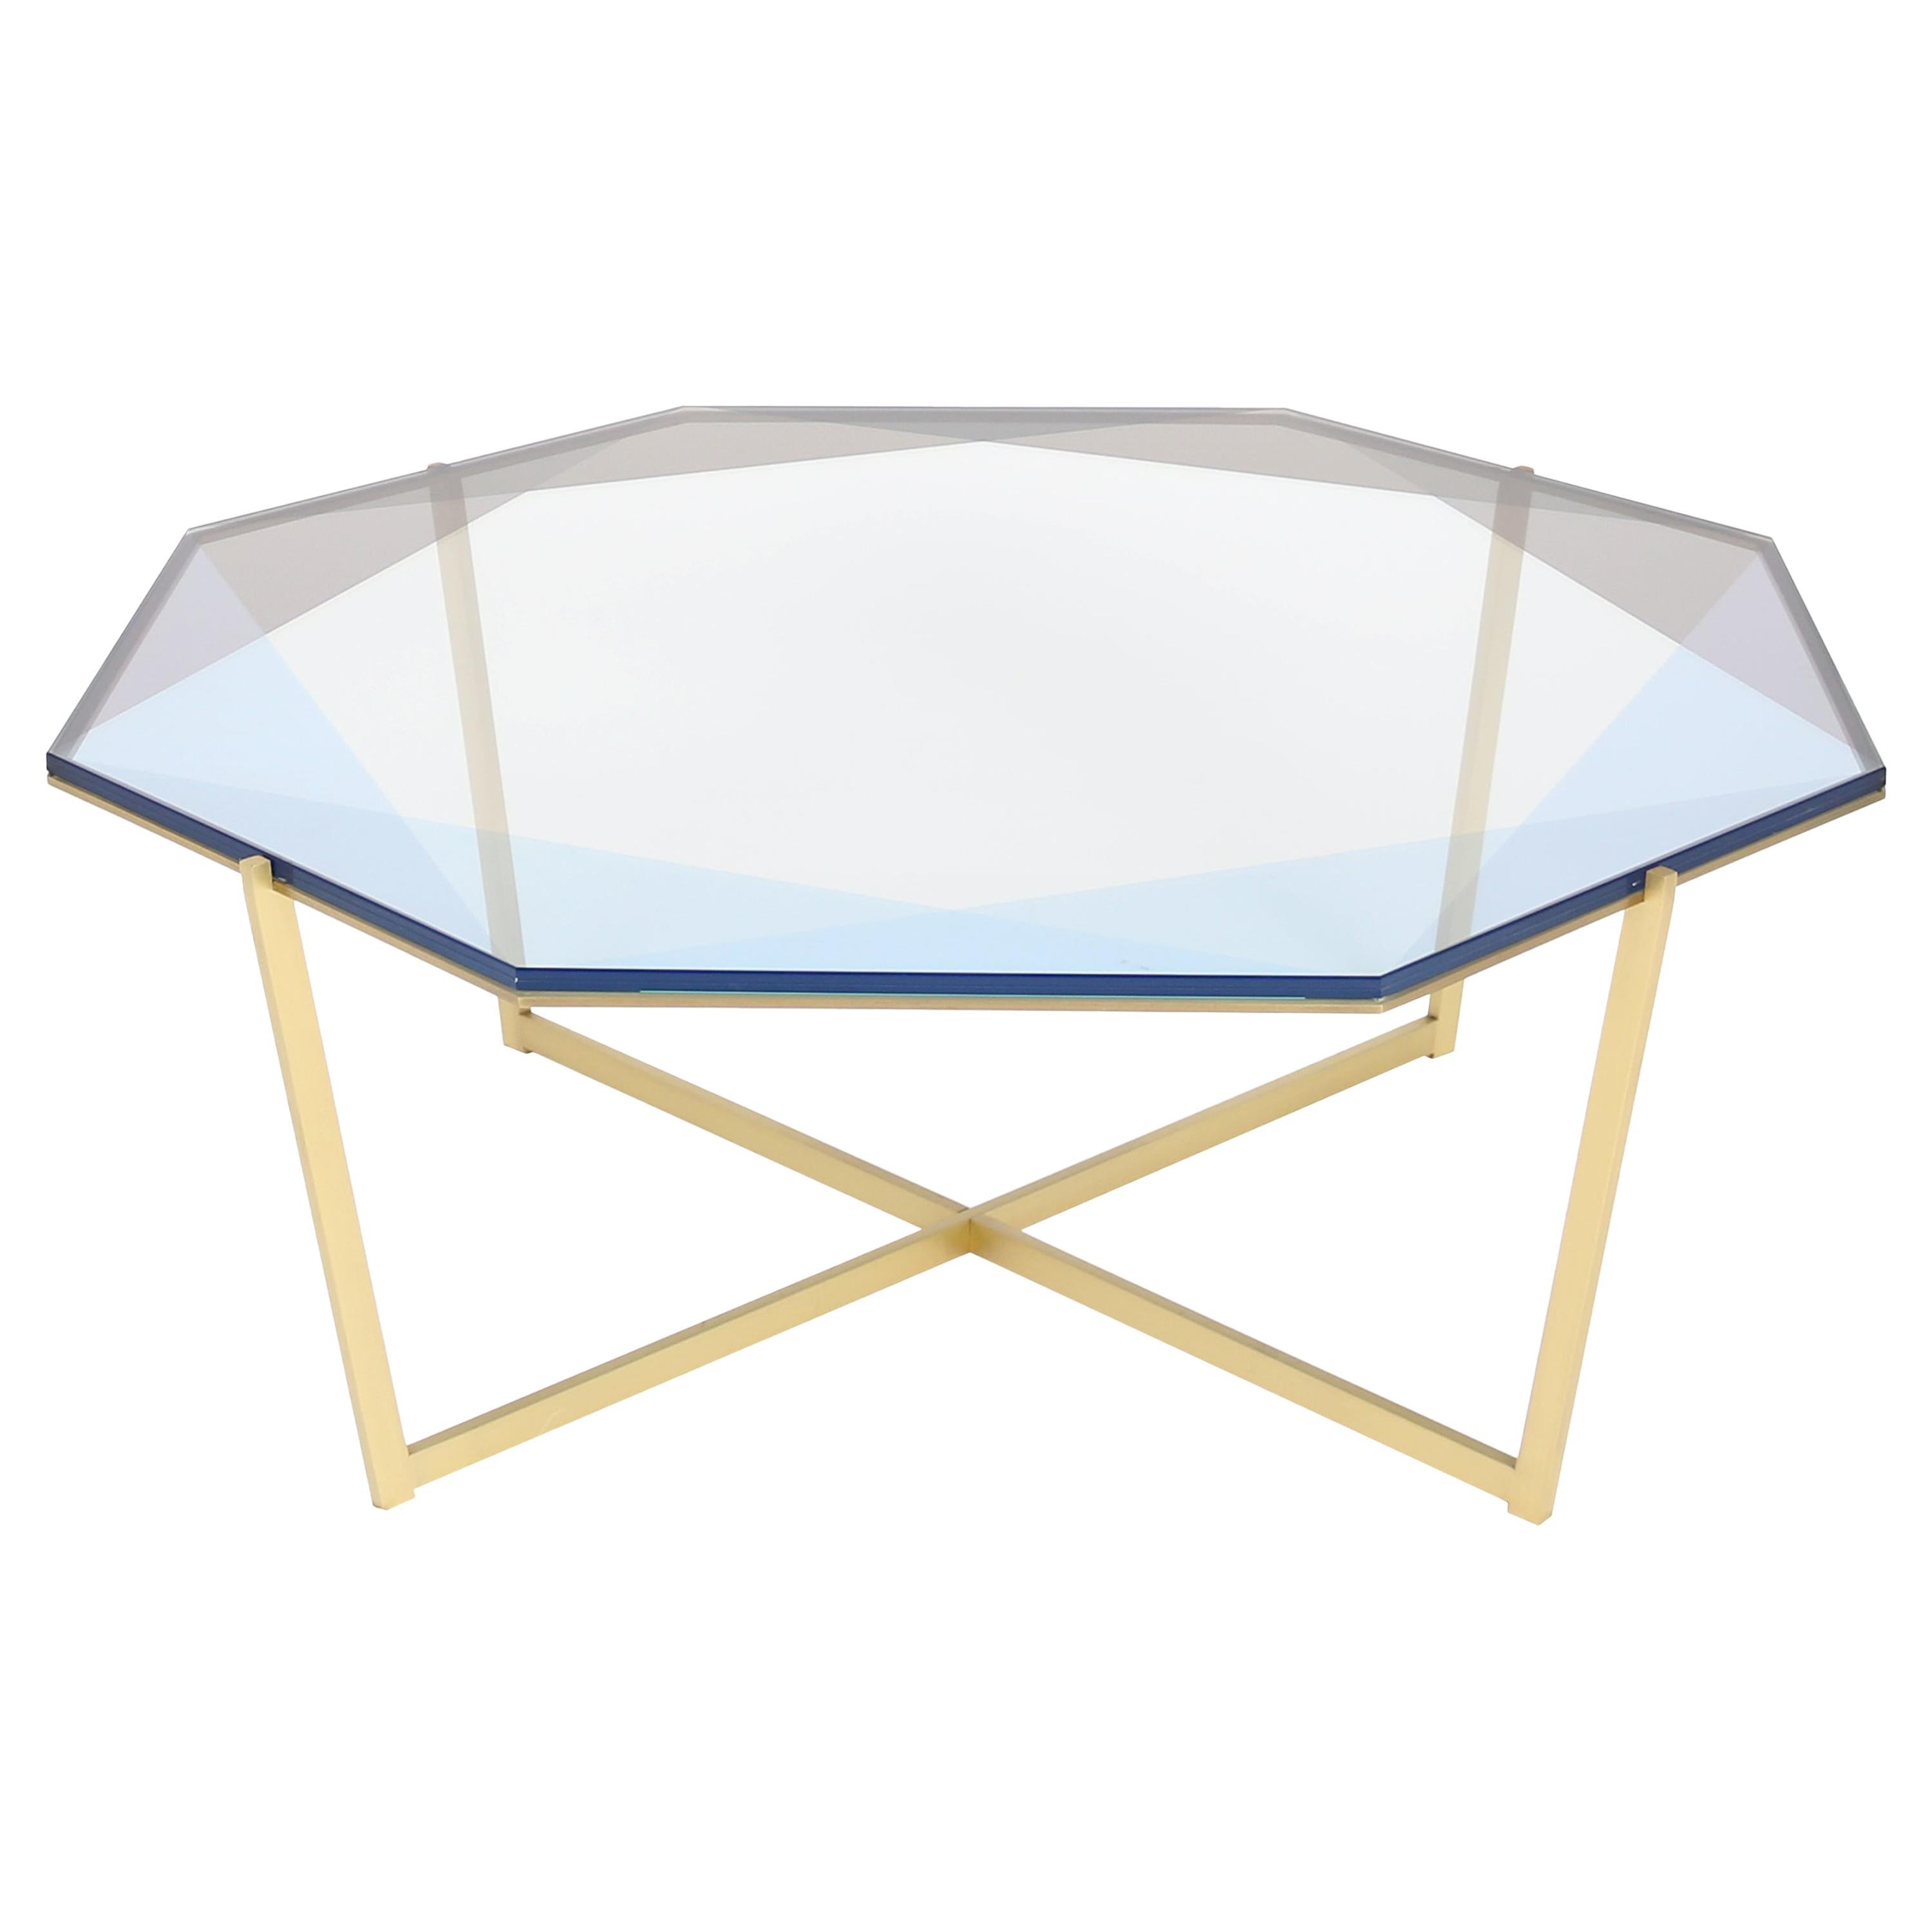 Gem Octagonal Coffee Table-Blue Glass with Brass Base by Debra Folz